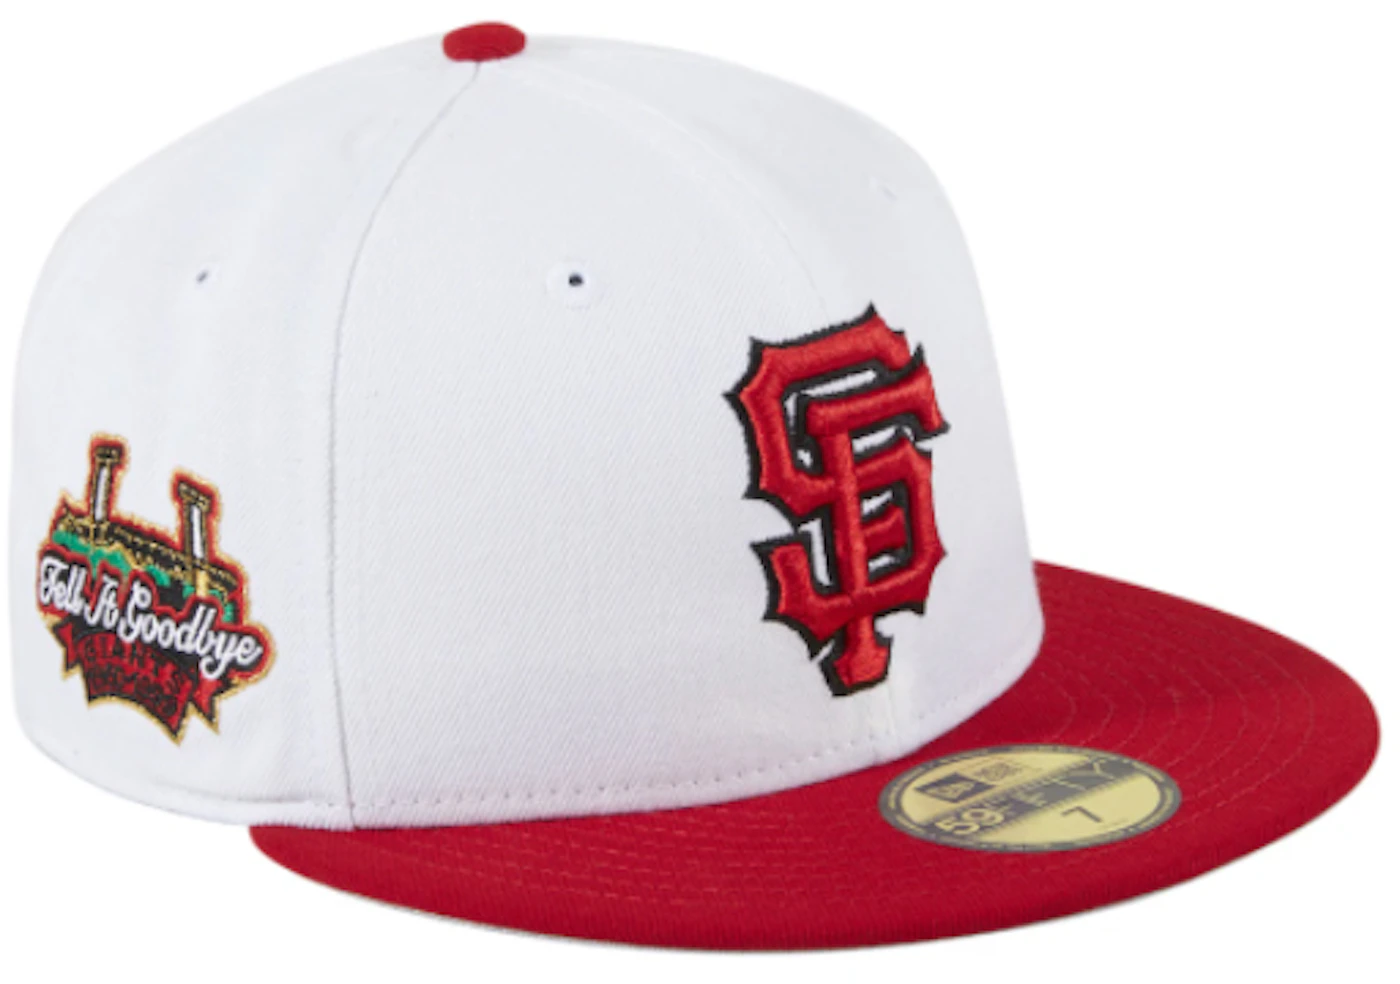 San Francisco Giants Hat, Giants Hats, Baseball Cap